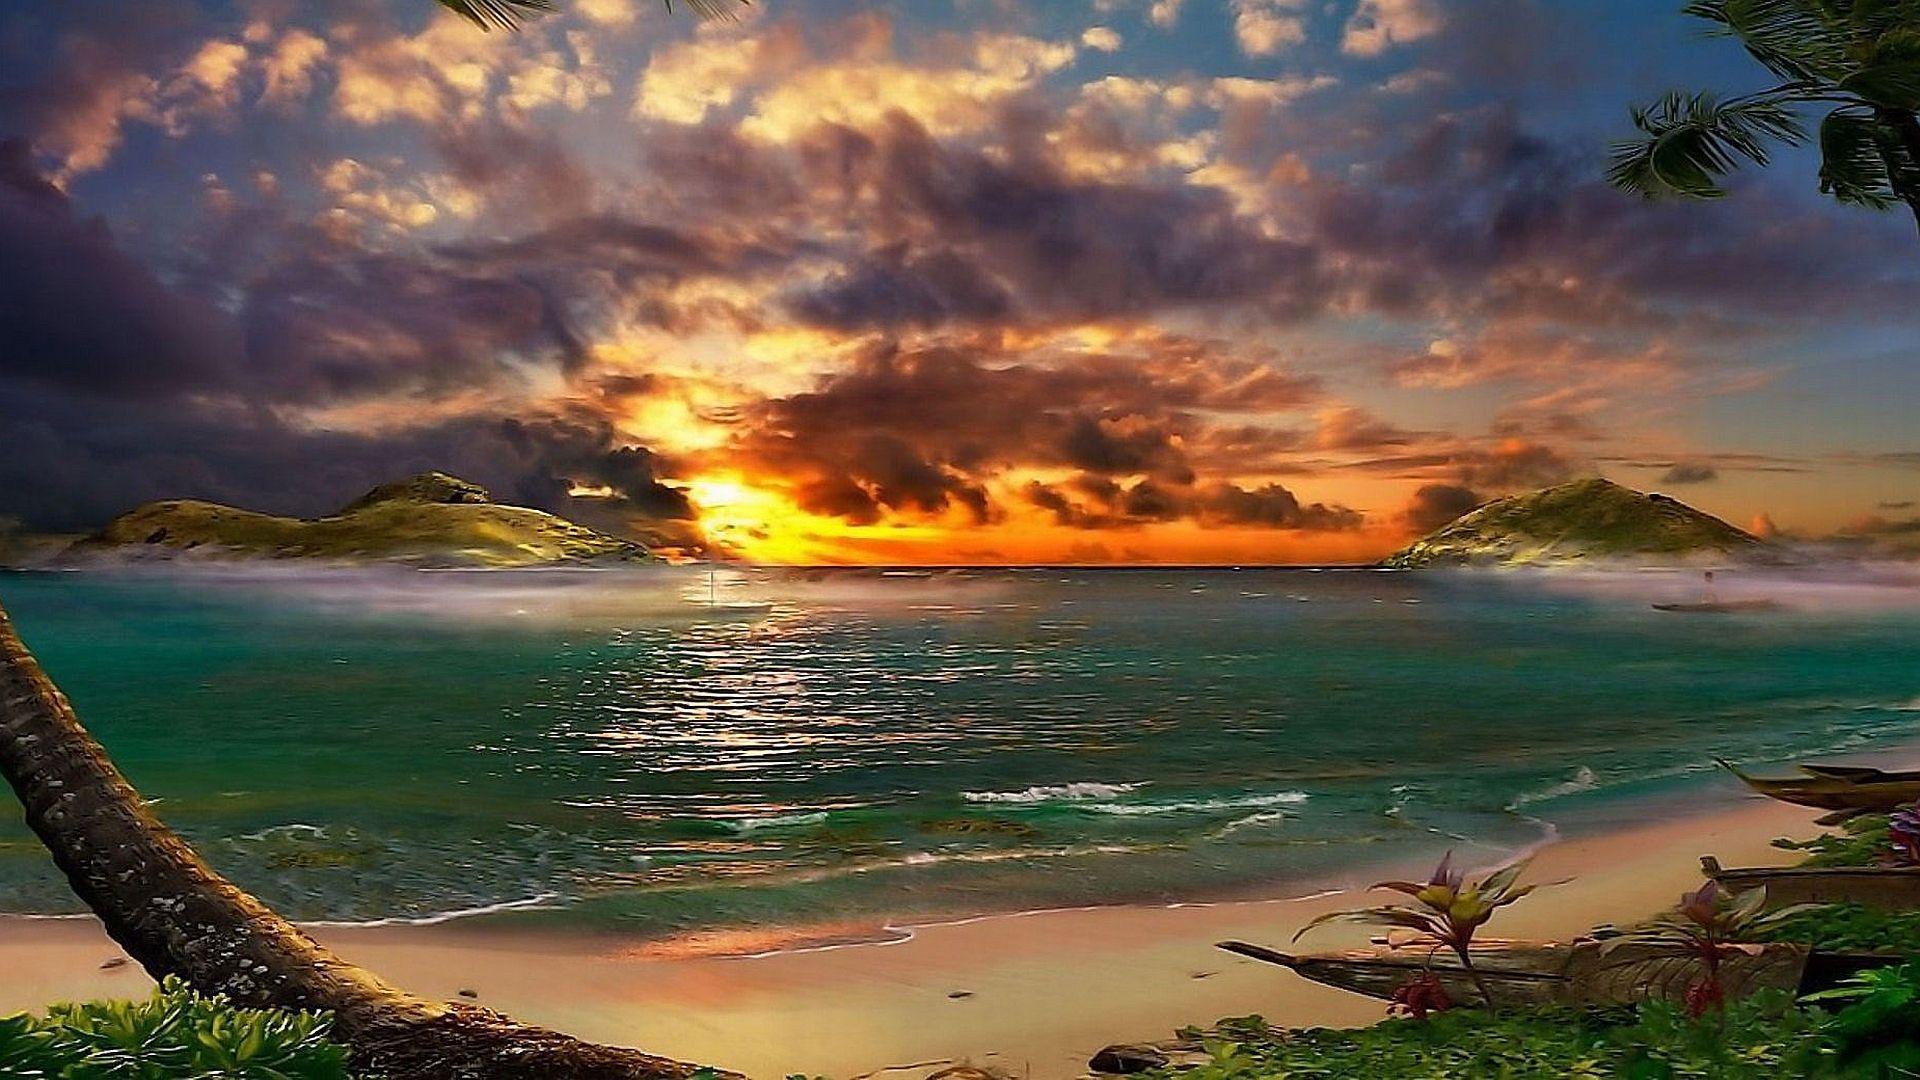 Beach Sunset Wallpaper, 35 Desktop Image of Beach Sunset